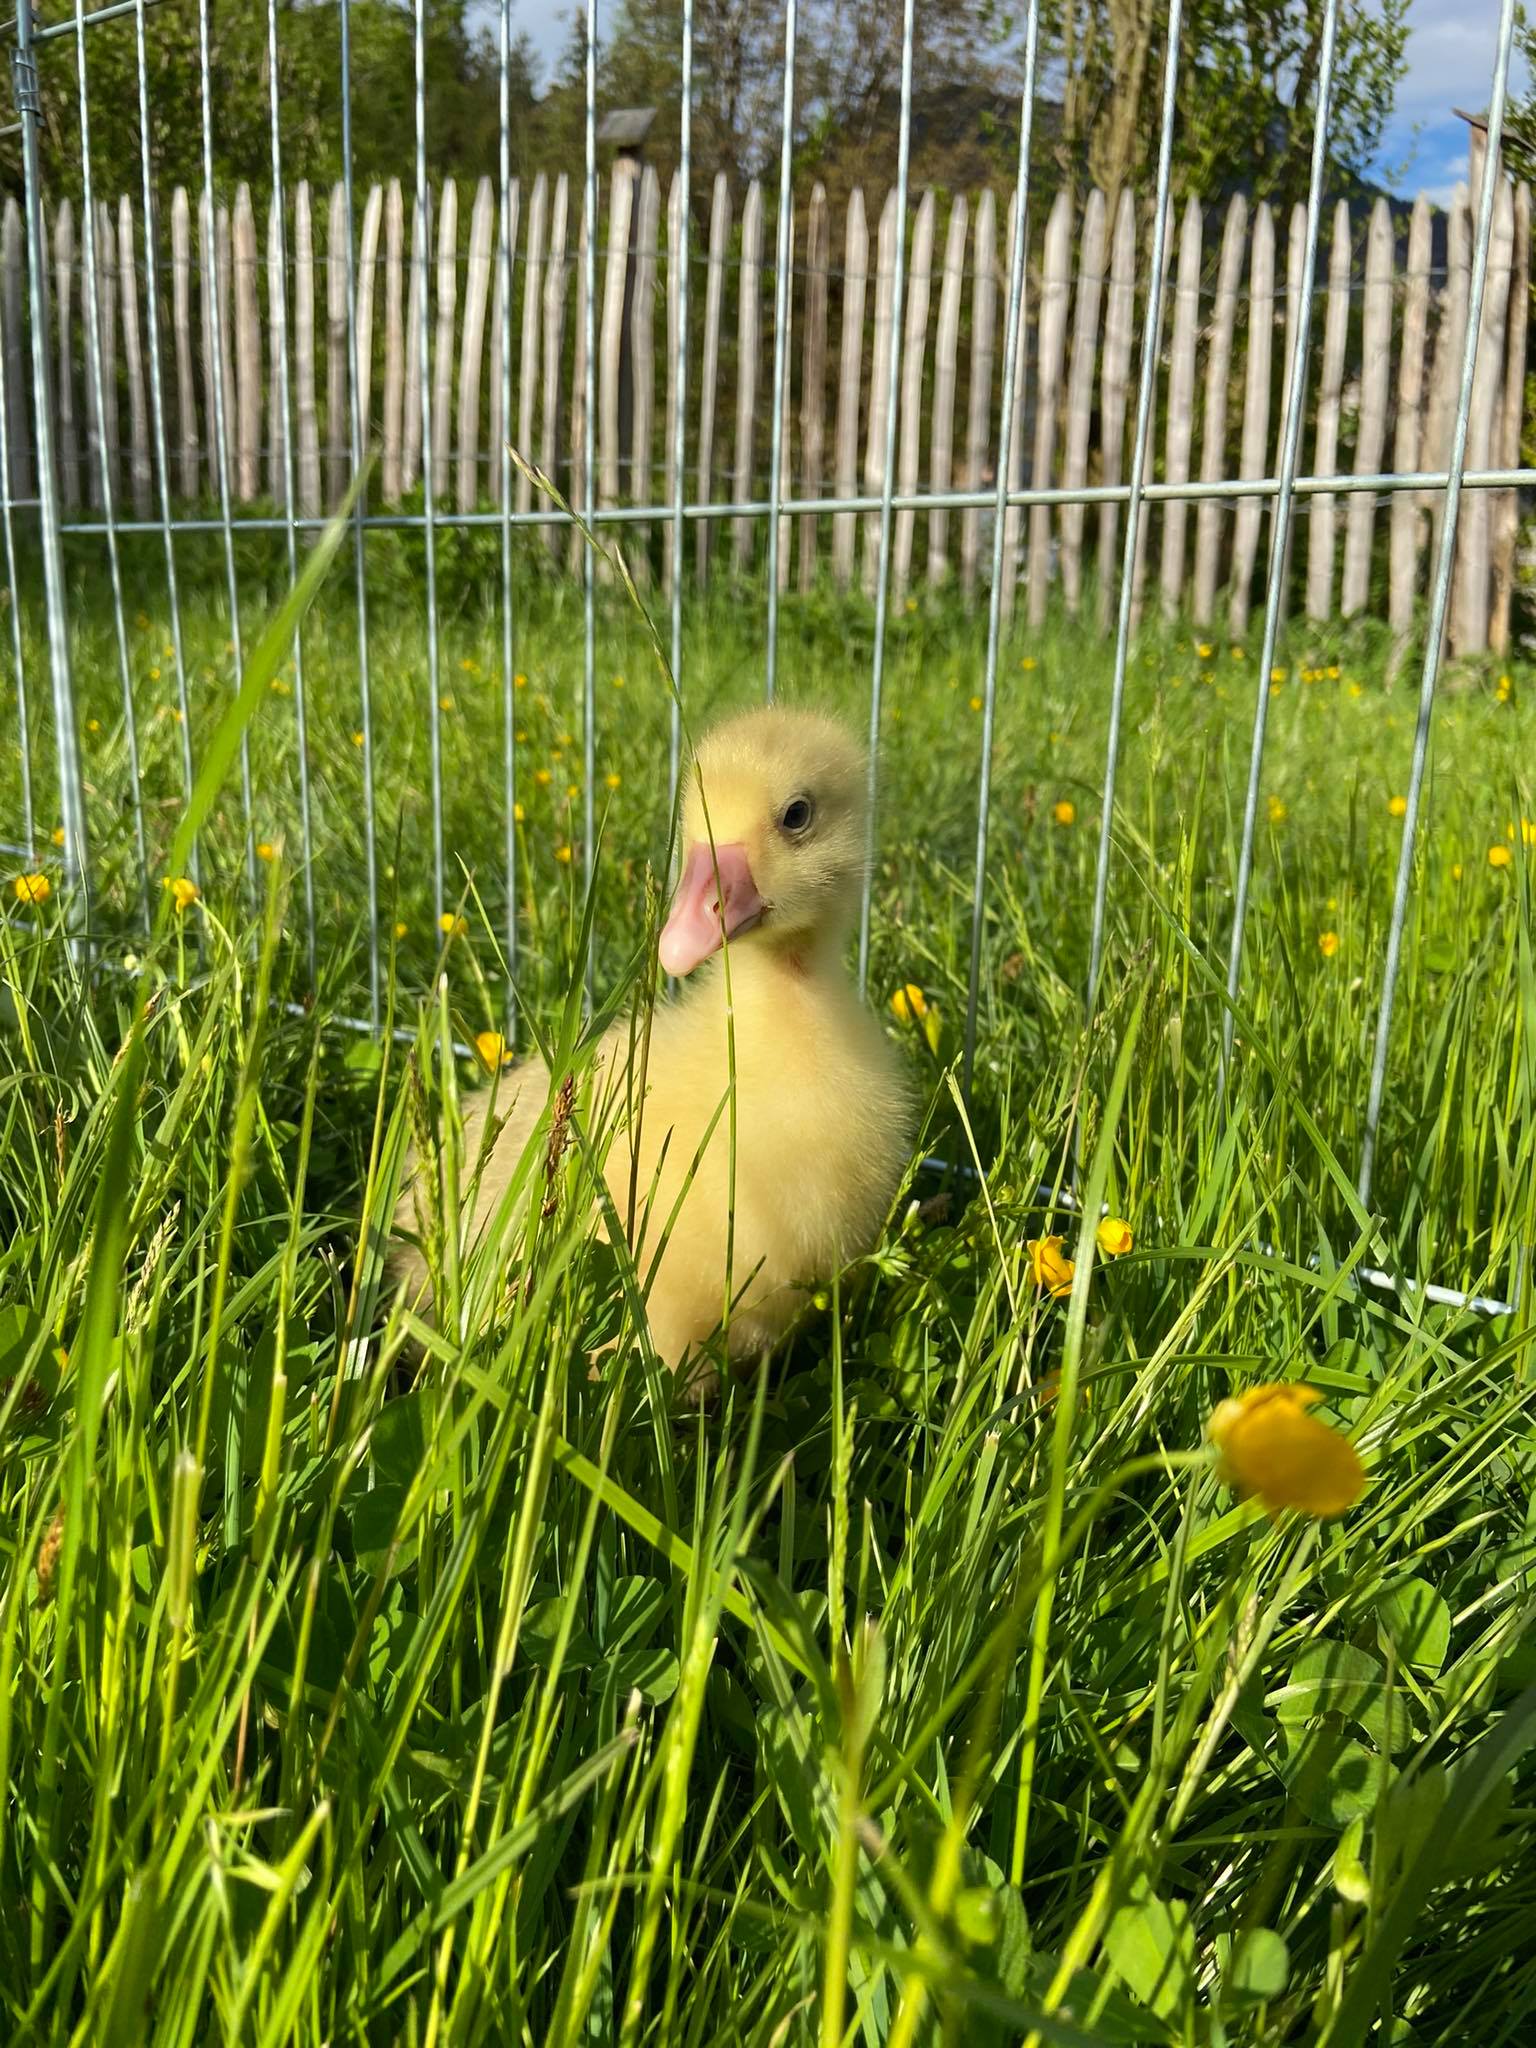 goslings